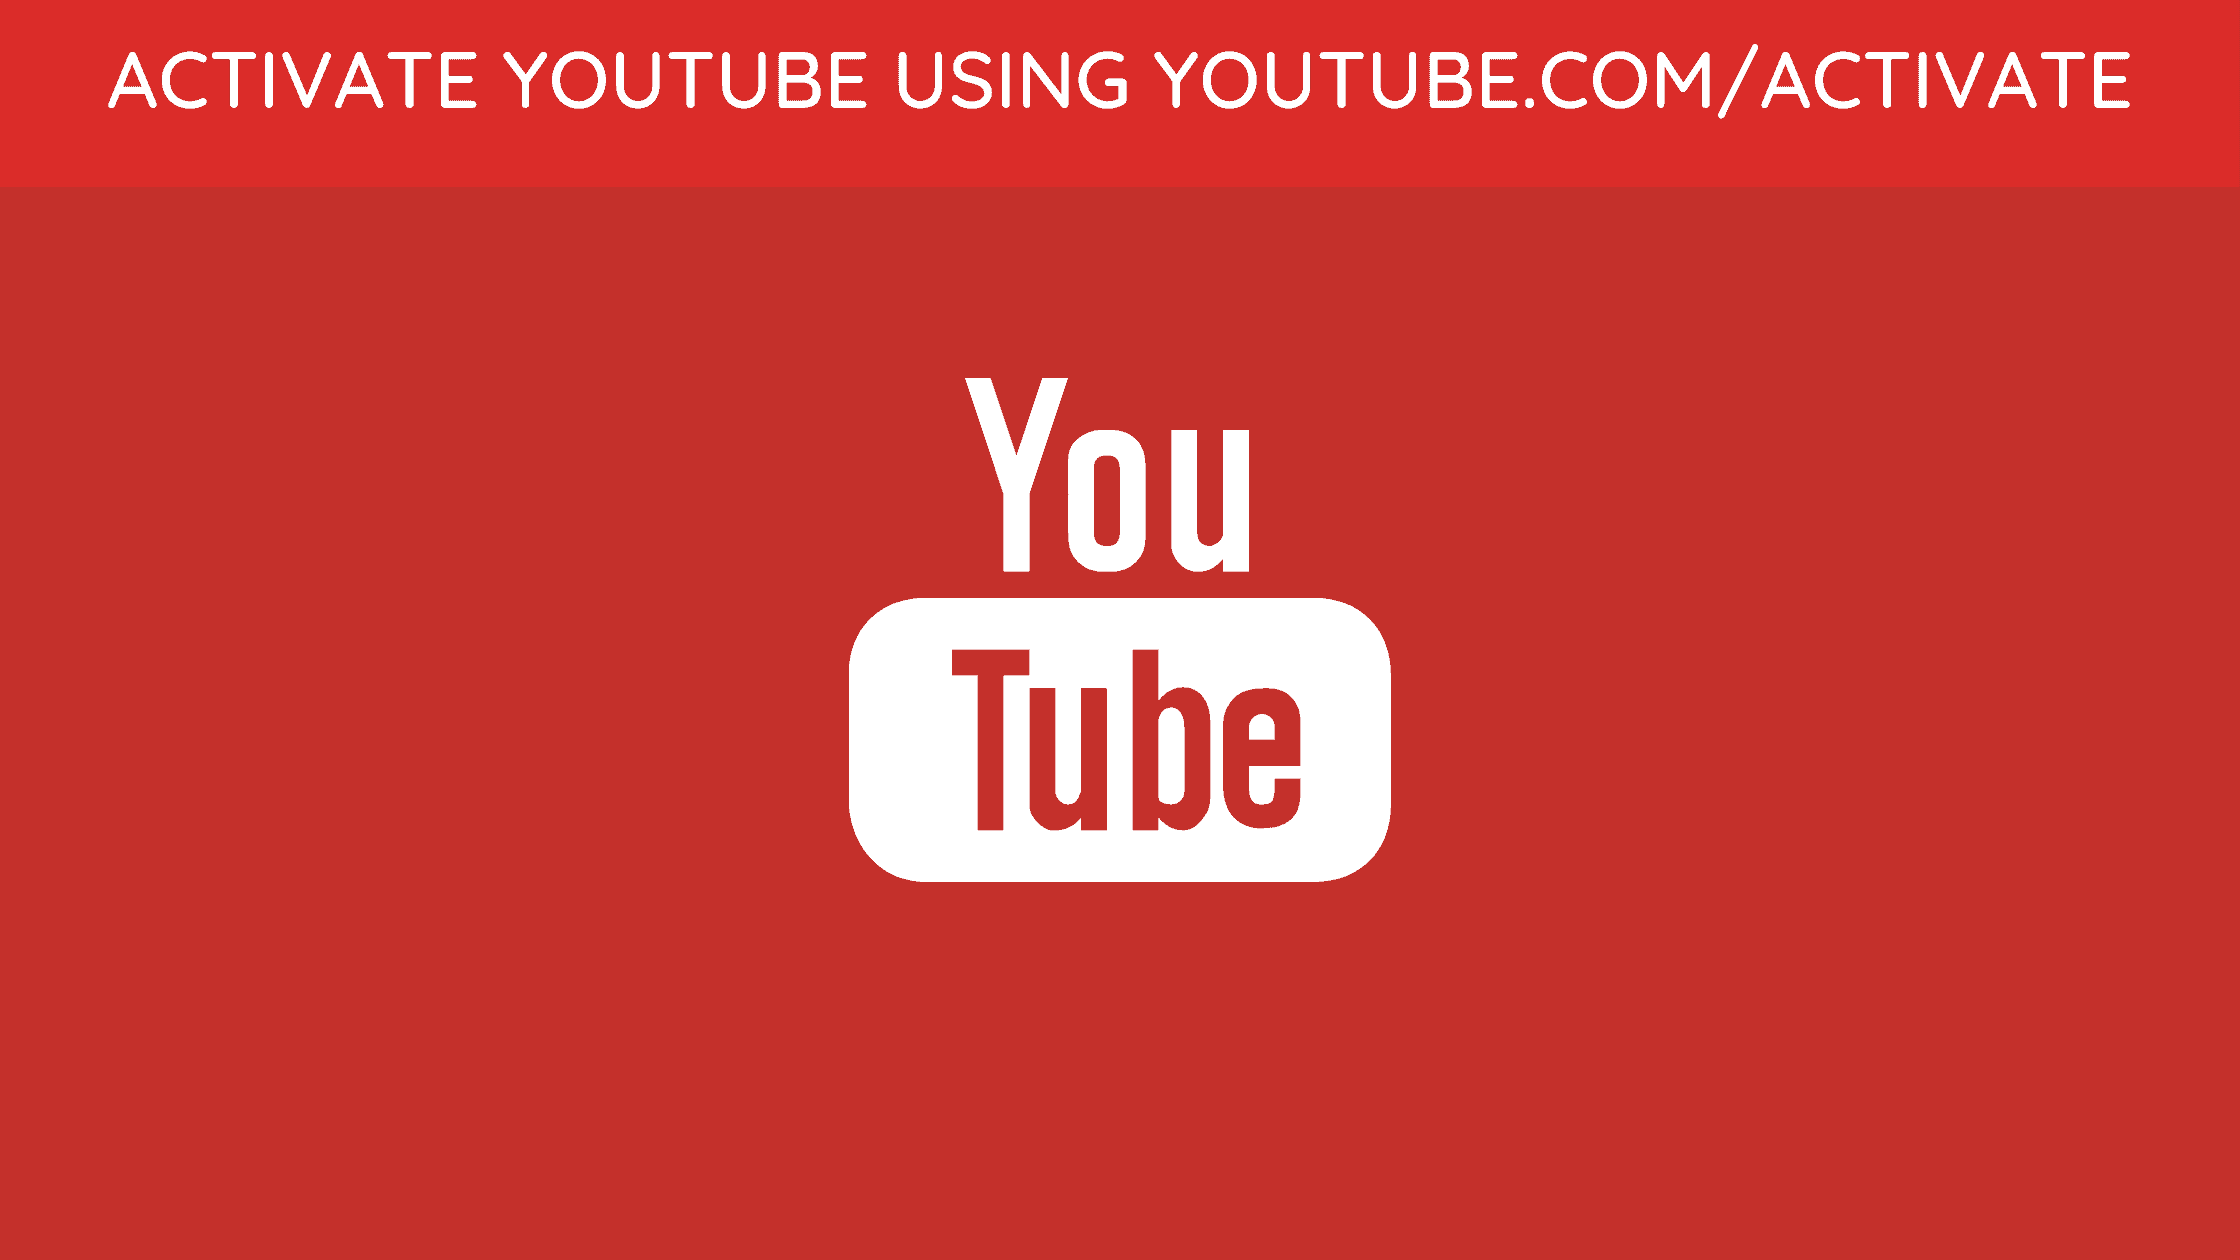 Ютуб активате ввести. Ютуб активейт. Youtube activate. Ютуб.com activate. Youtube.com/activate youtube.com/activate.